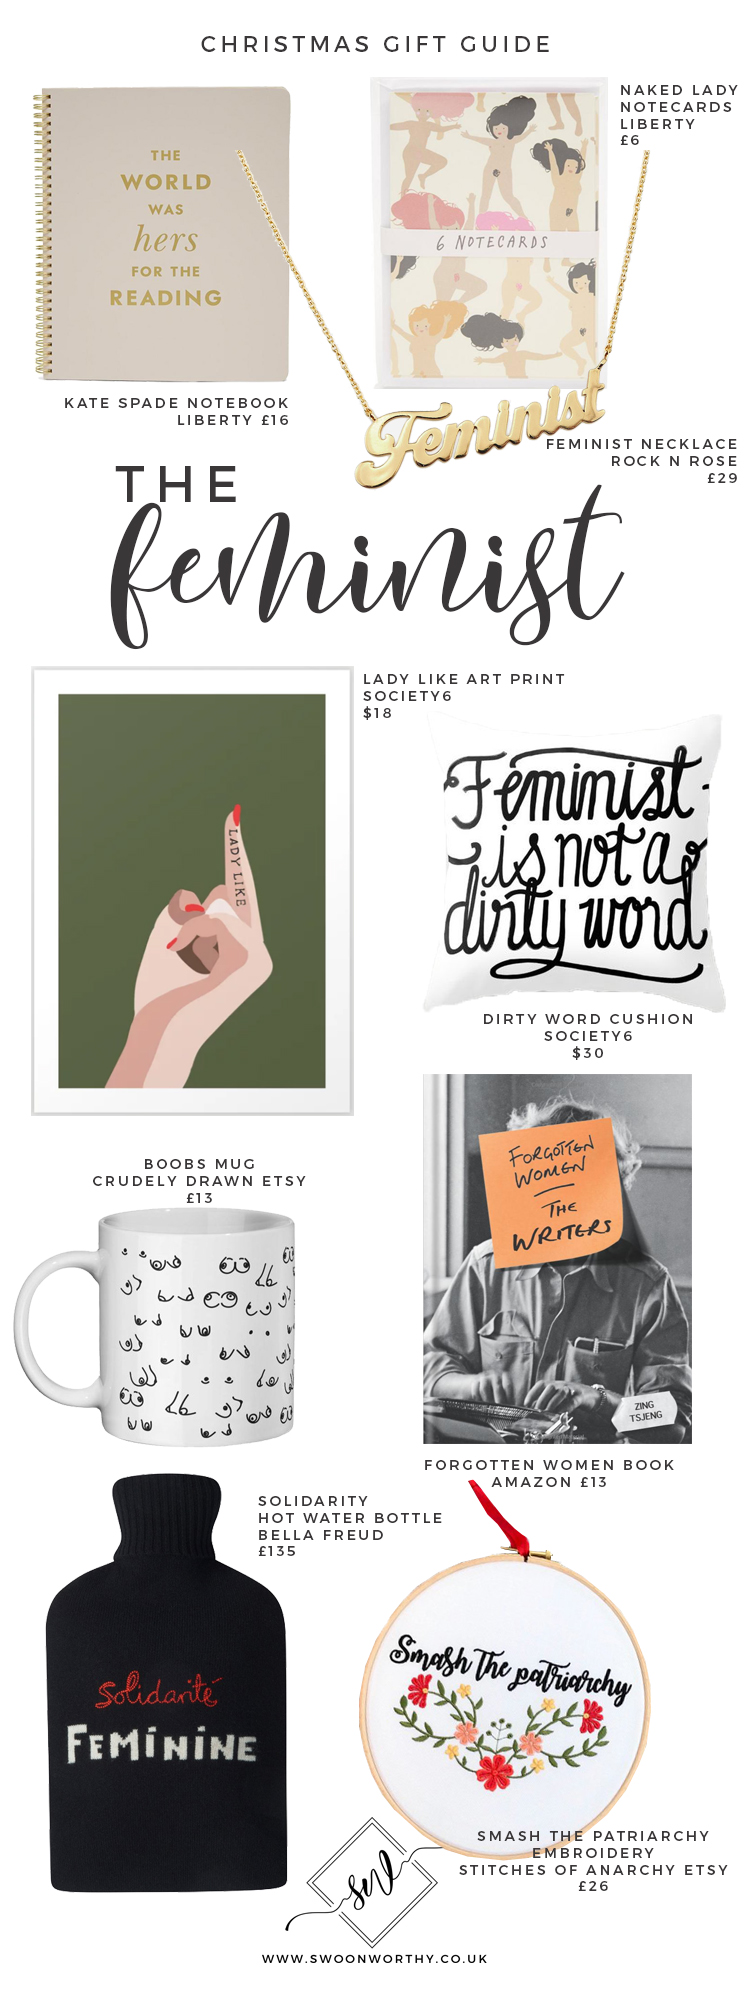 The Feminist Christmas Gift Guide